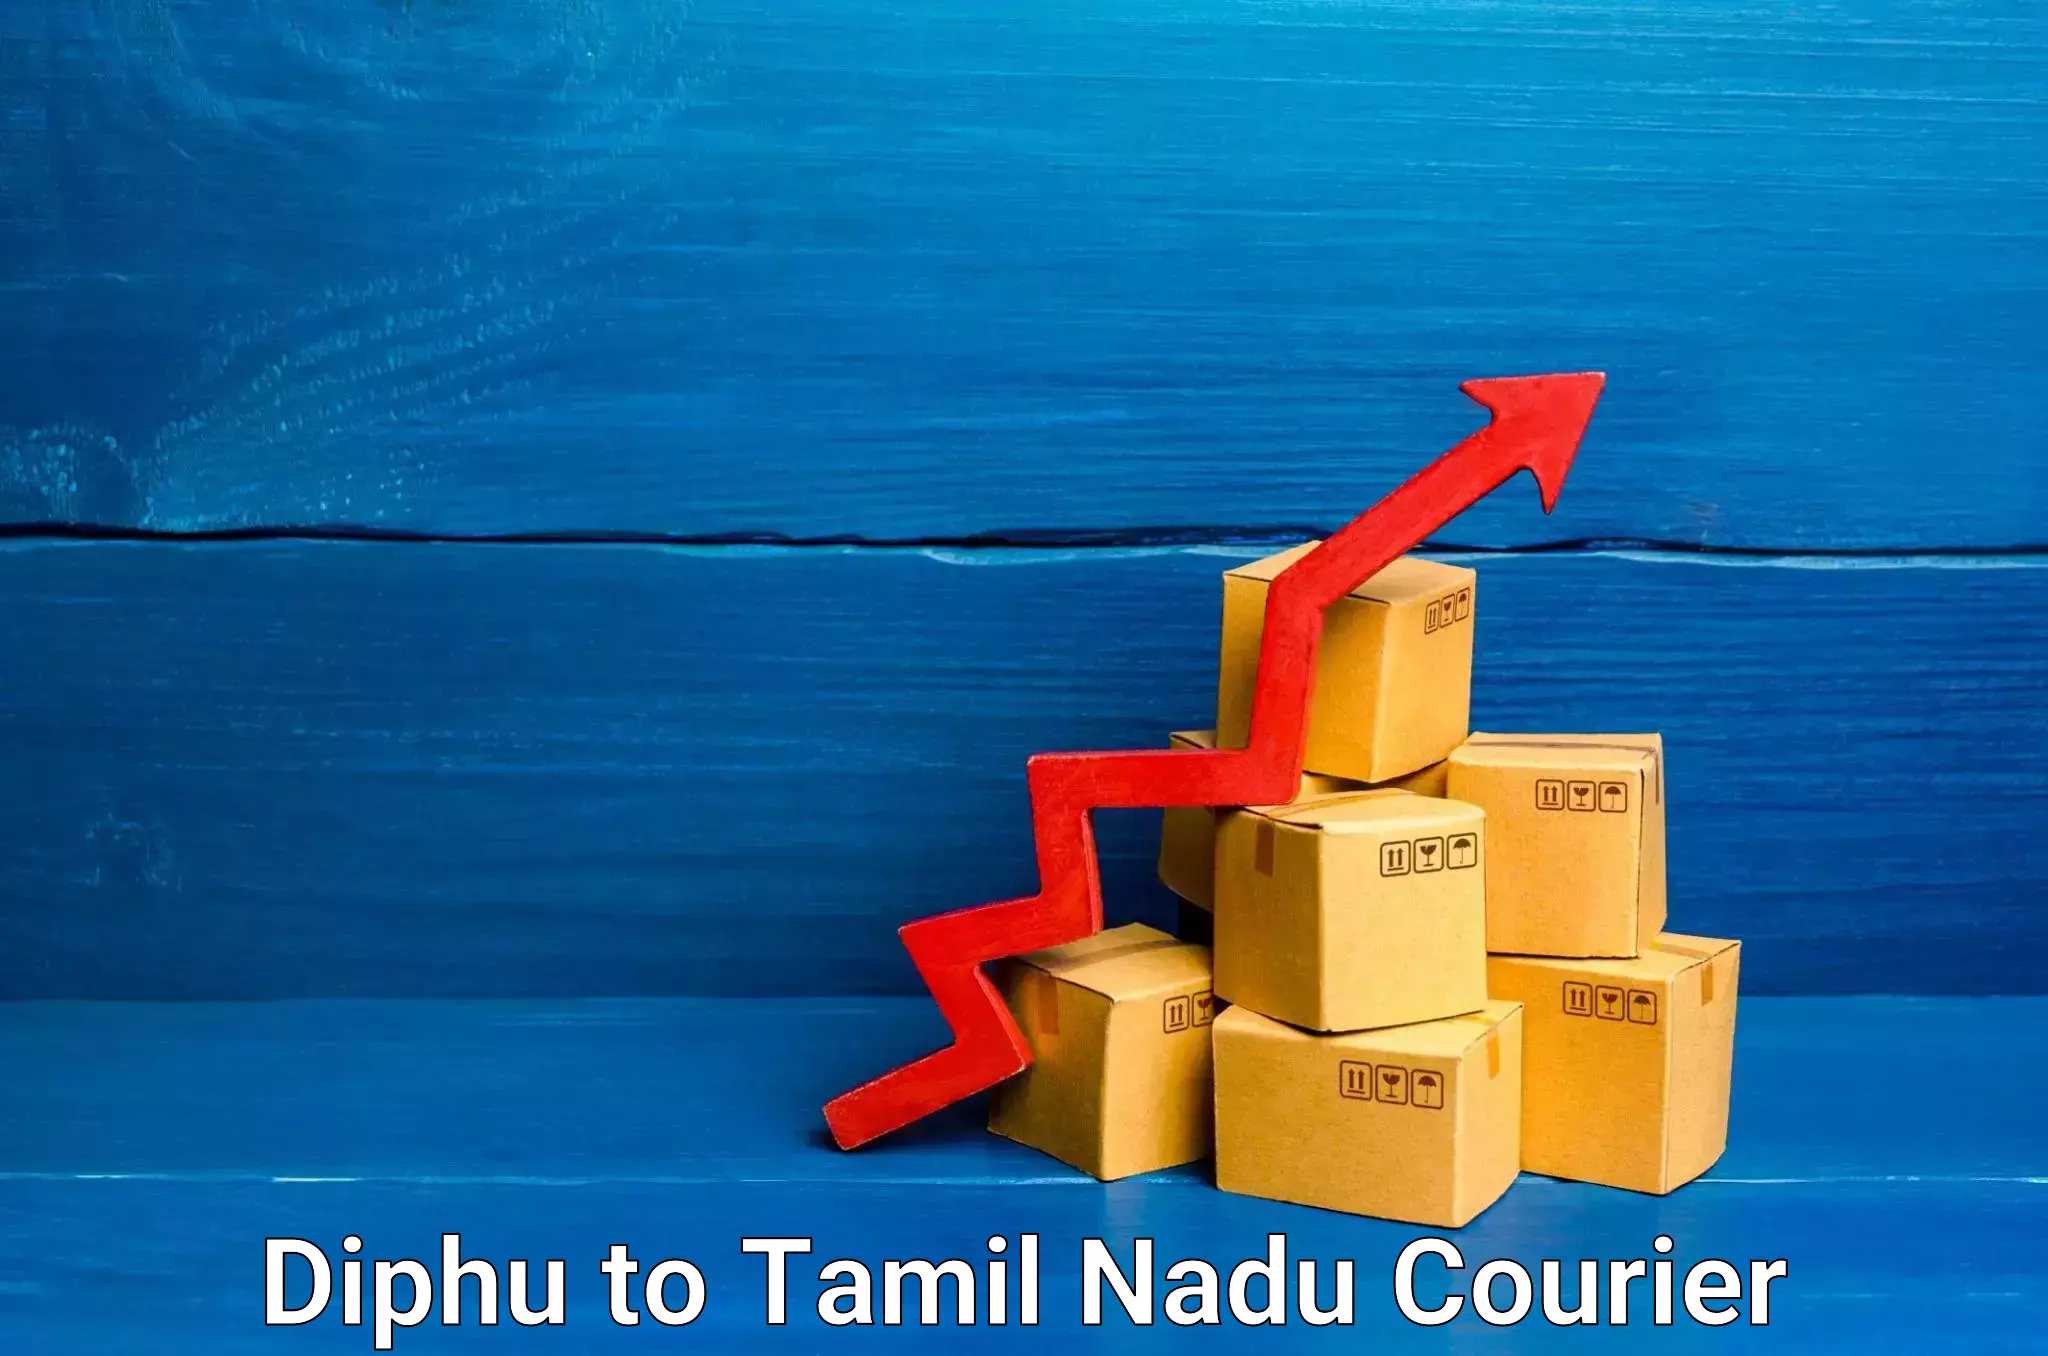 Efficient shipping platforms Diphu to Thondi